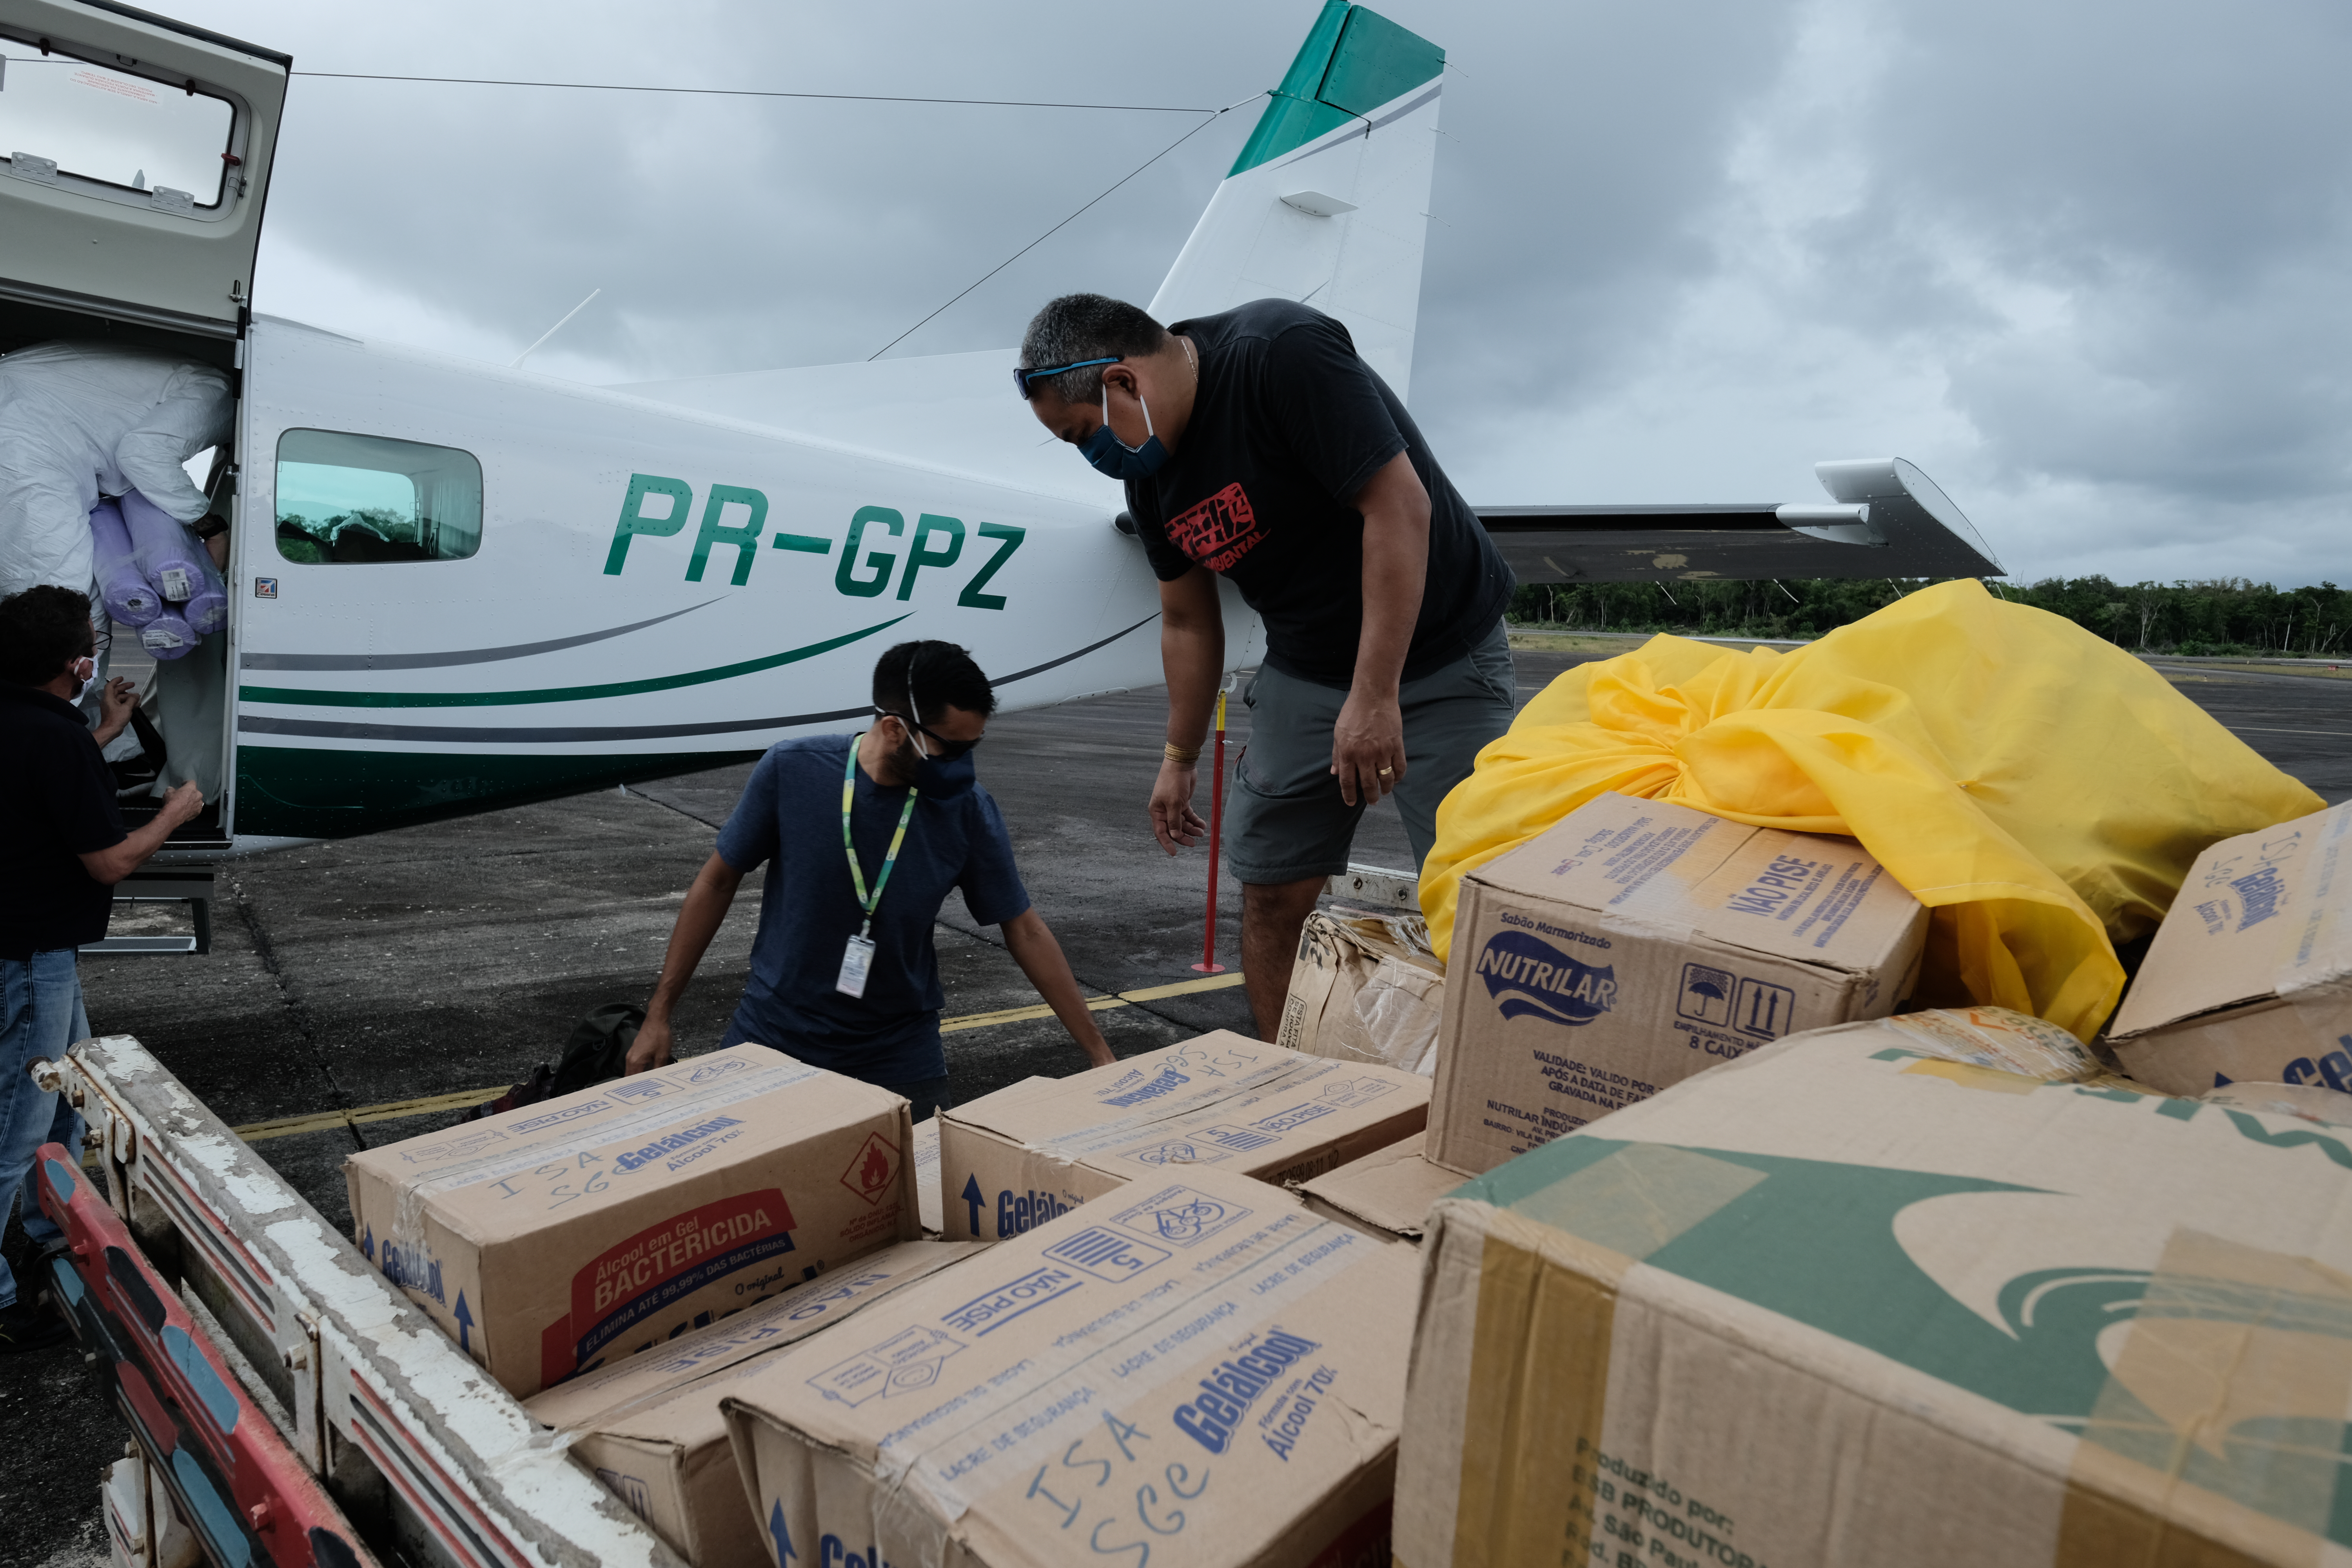 Insumos chegam ao aeroporto de São Gabriel da Cachoeira, transportados pelo Greenpeace|Marcos Amend/Greenpeace